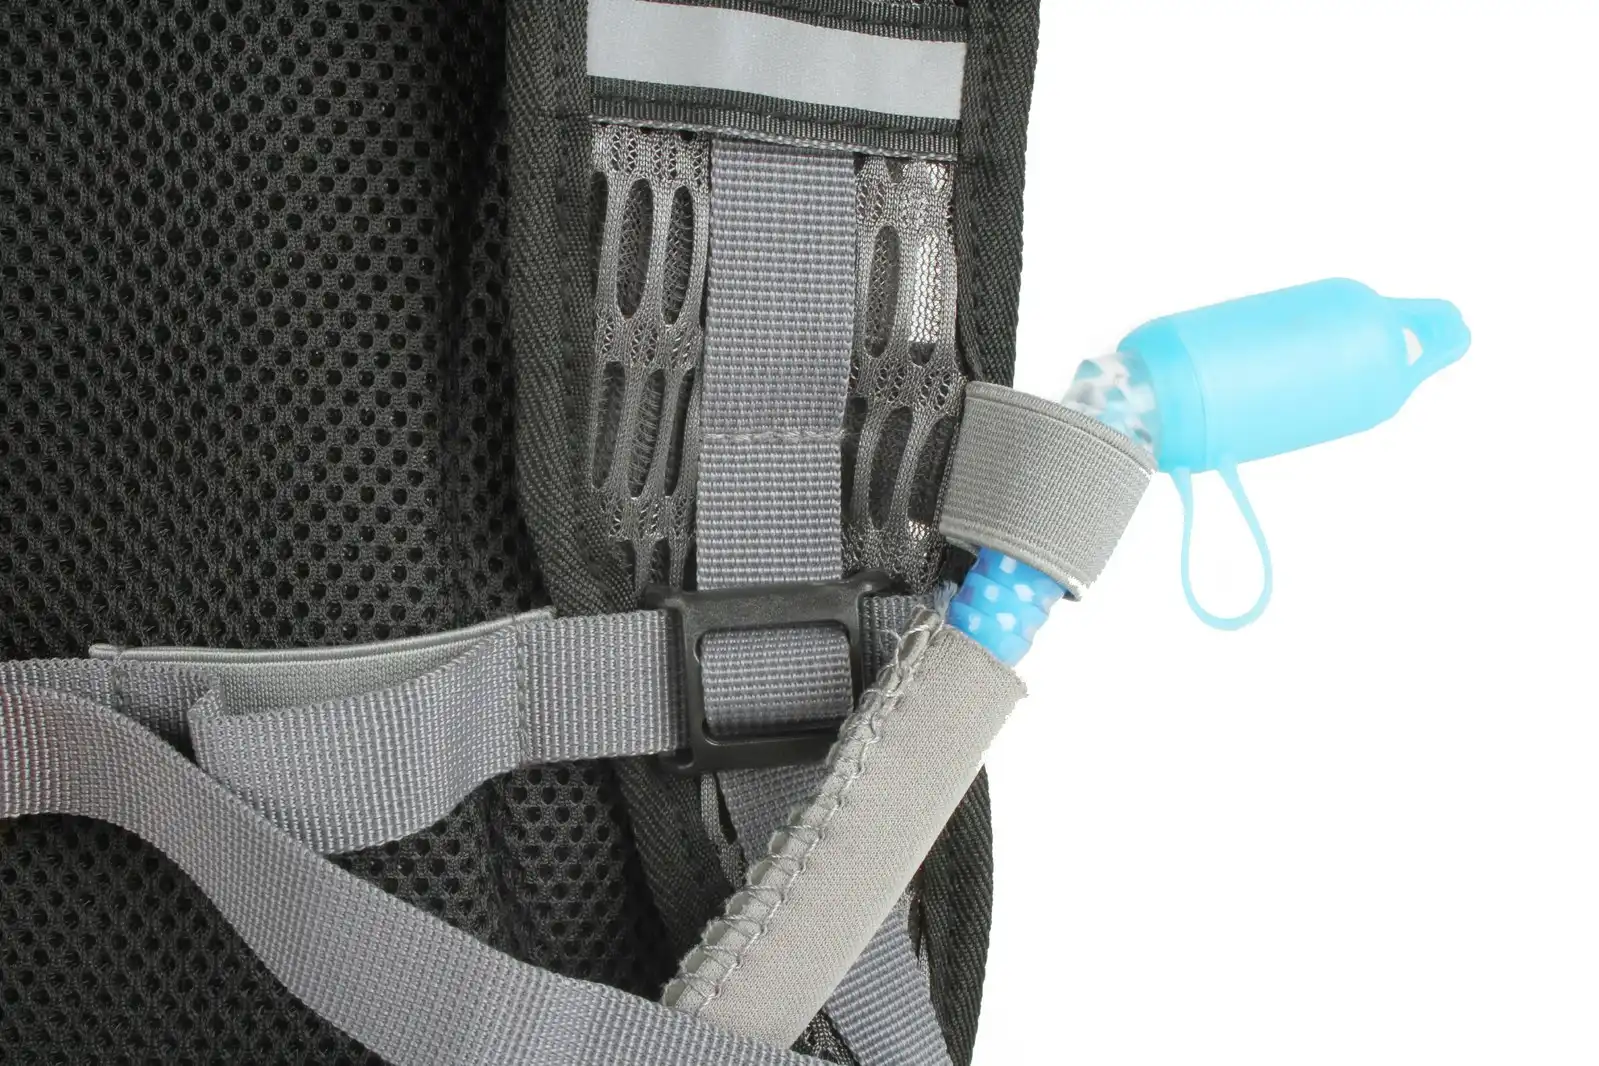 Wildtrak 1.5L Loop Hydration Pack Water/Drink Camping Storage Backpack Bag Grey